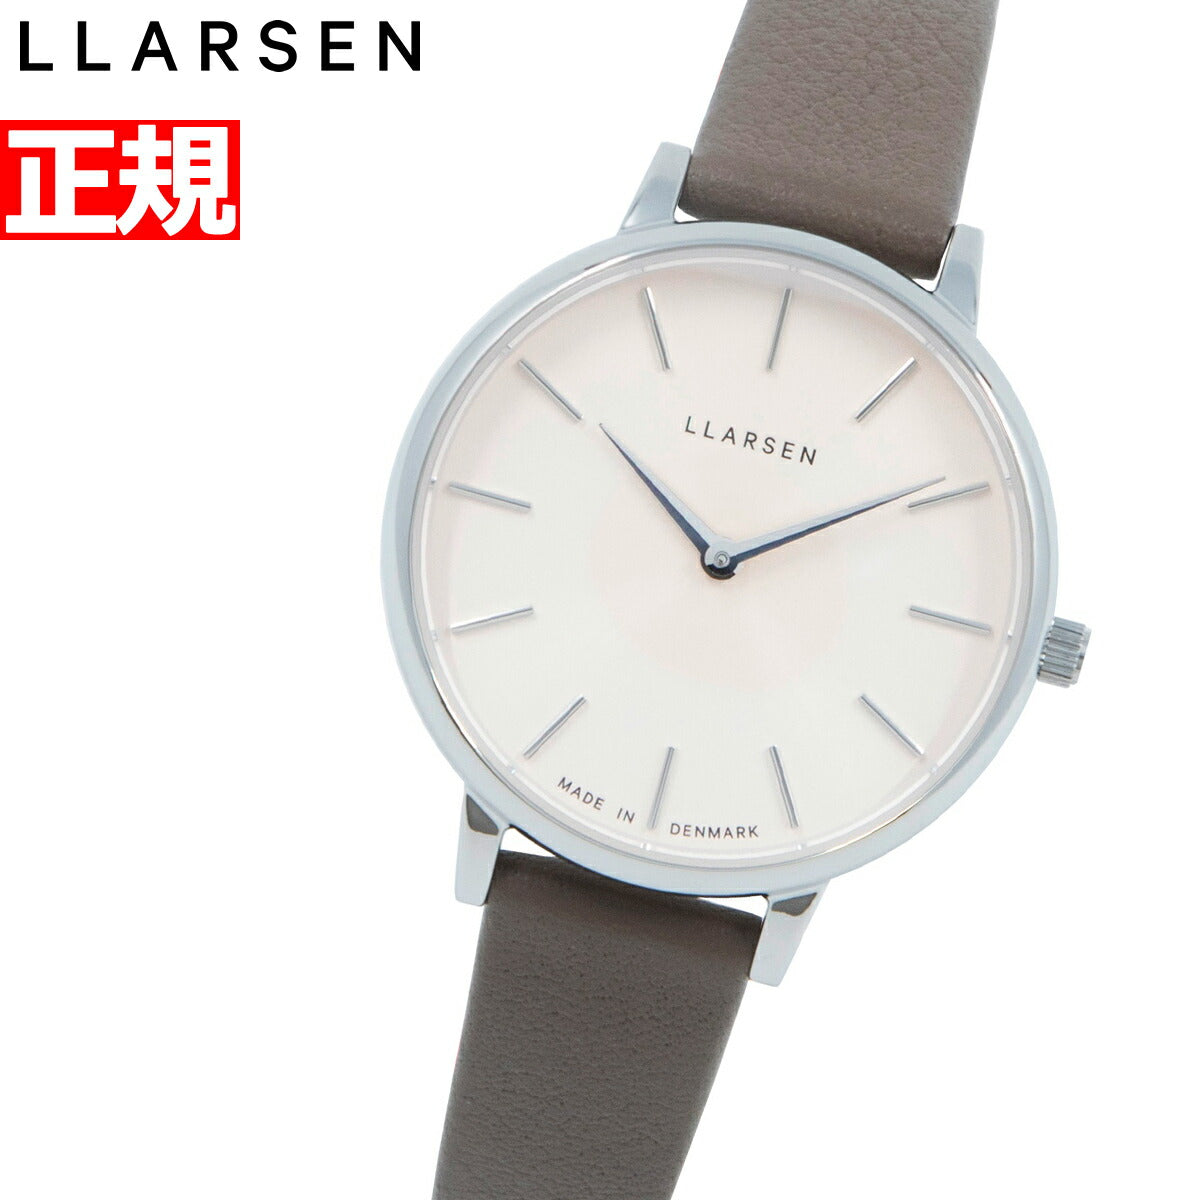 エルラーセン LLARSEN 腕時計 レディース エコレザー ECCO 限定モデル 替えベルト付 キャロライン – neel selectshop